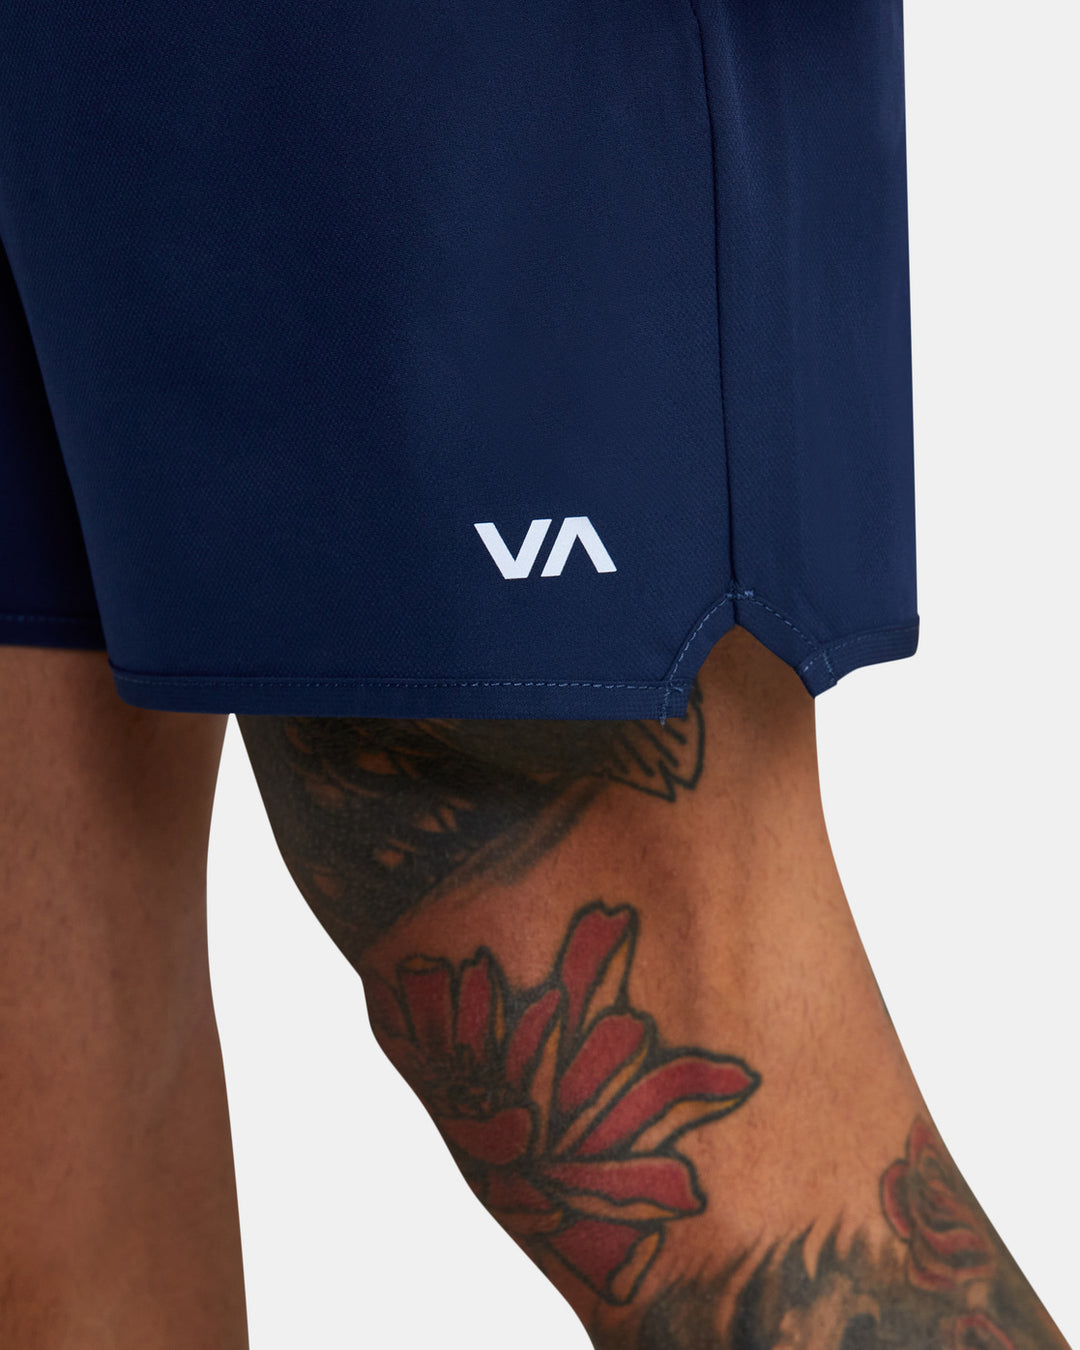 RVCA Yogger Stretch Athletic Shorts 17" - Midnight - Sun Diego Boardshop